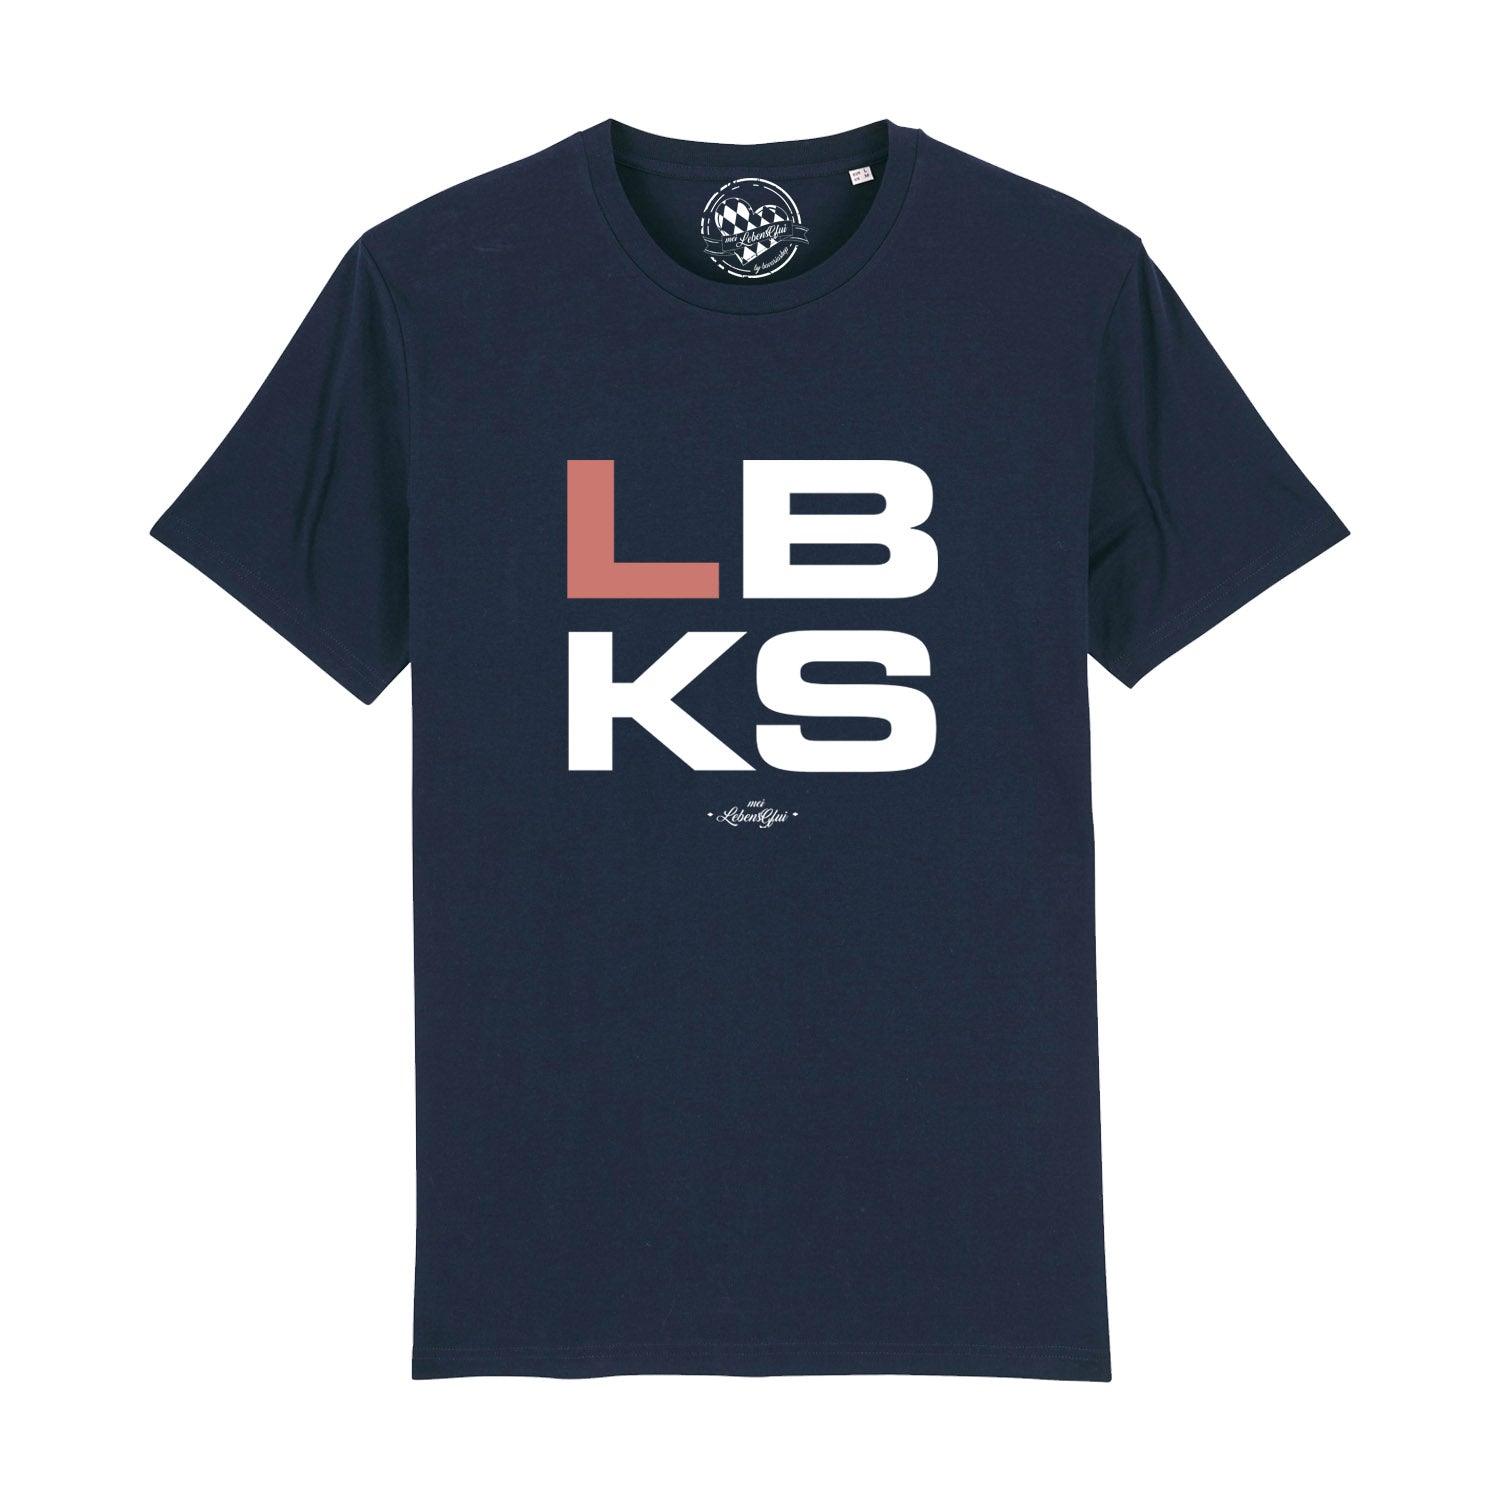 Herren T-Shirt "LBKS" - bavariashop - mei LebensGfui